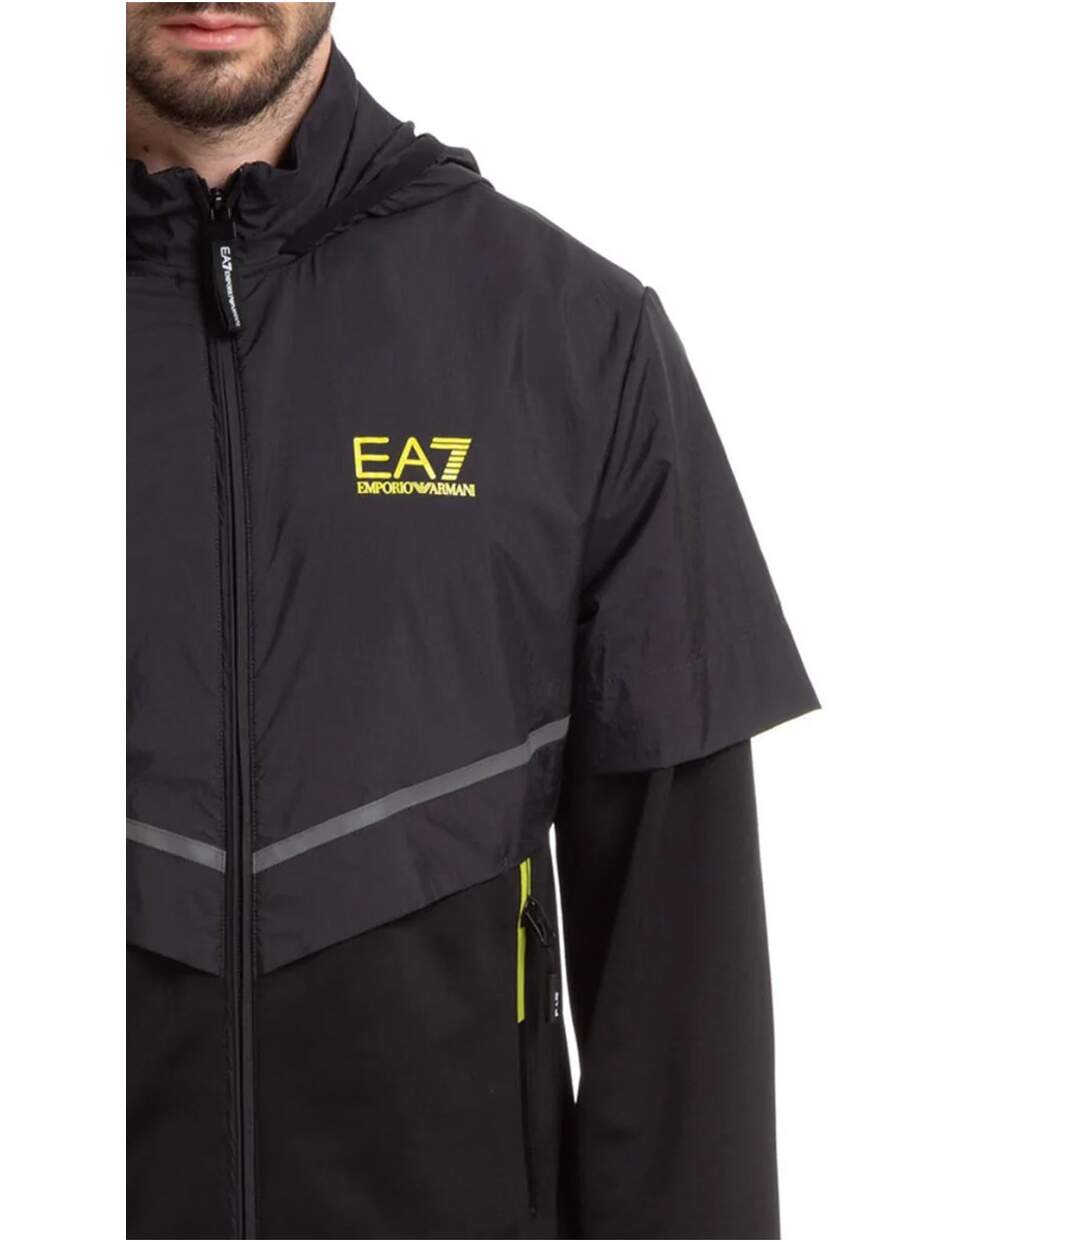 Sweat zippé bimatière à capuche  -  EA7 - Homme